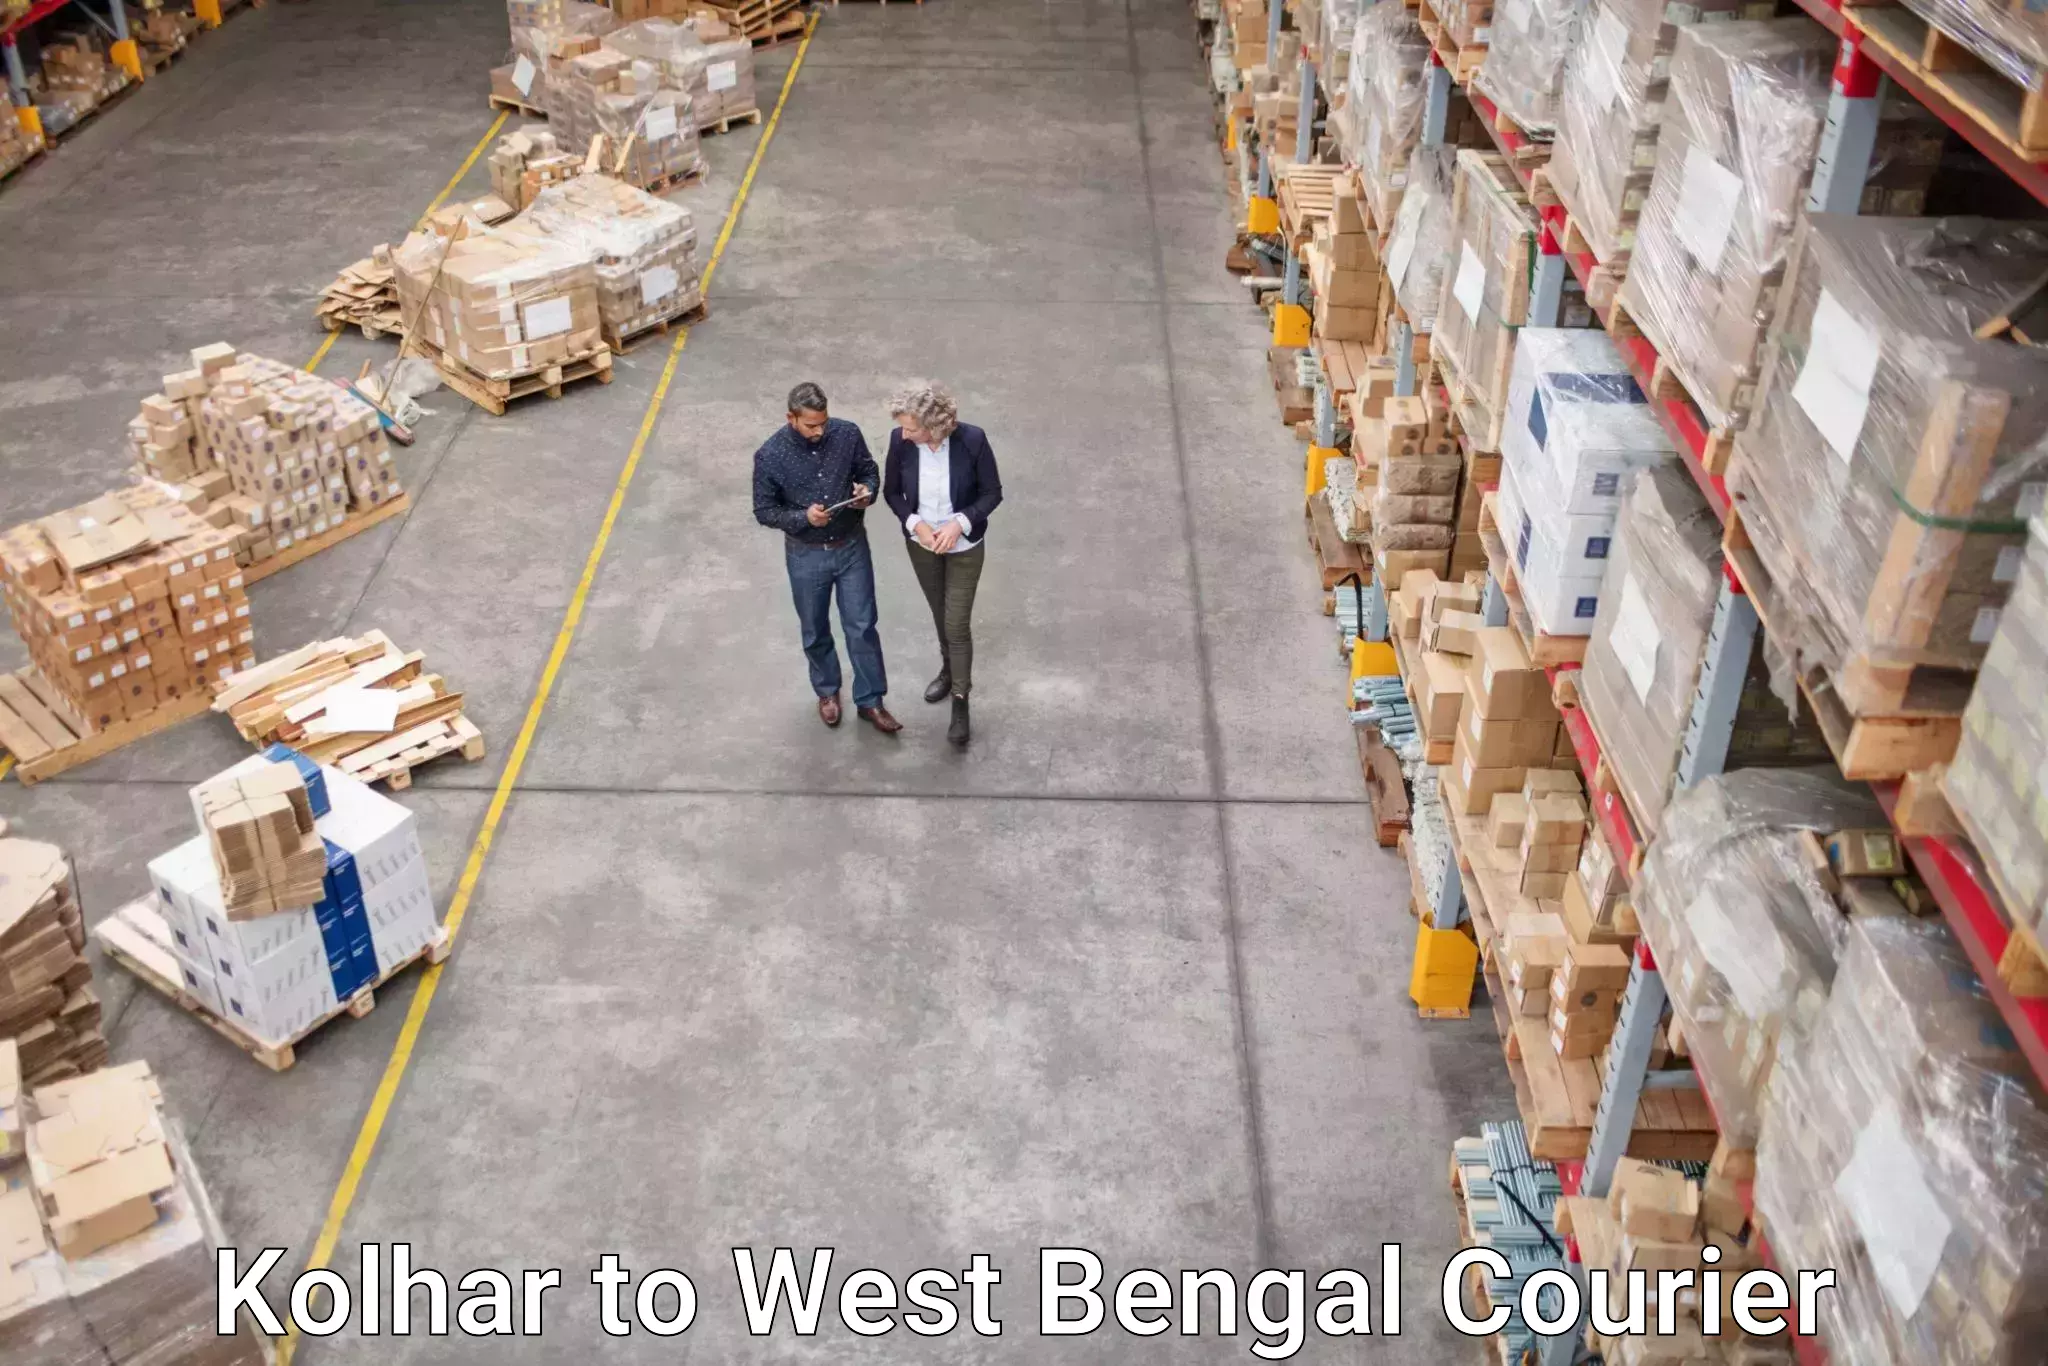 Efficient parcel service Kolhar to West Bengal